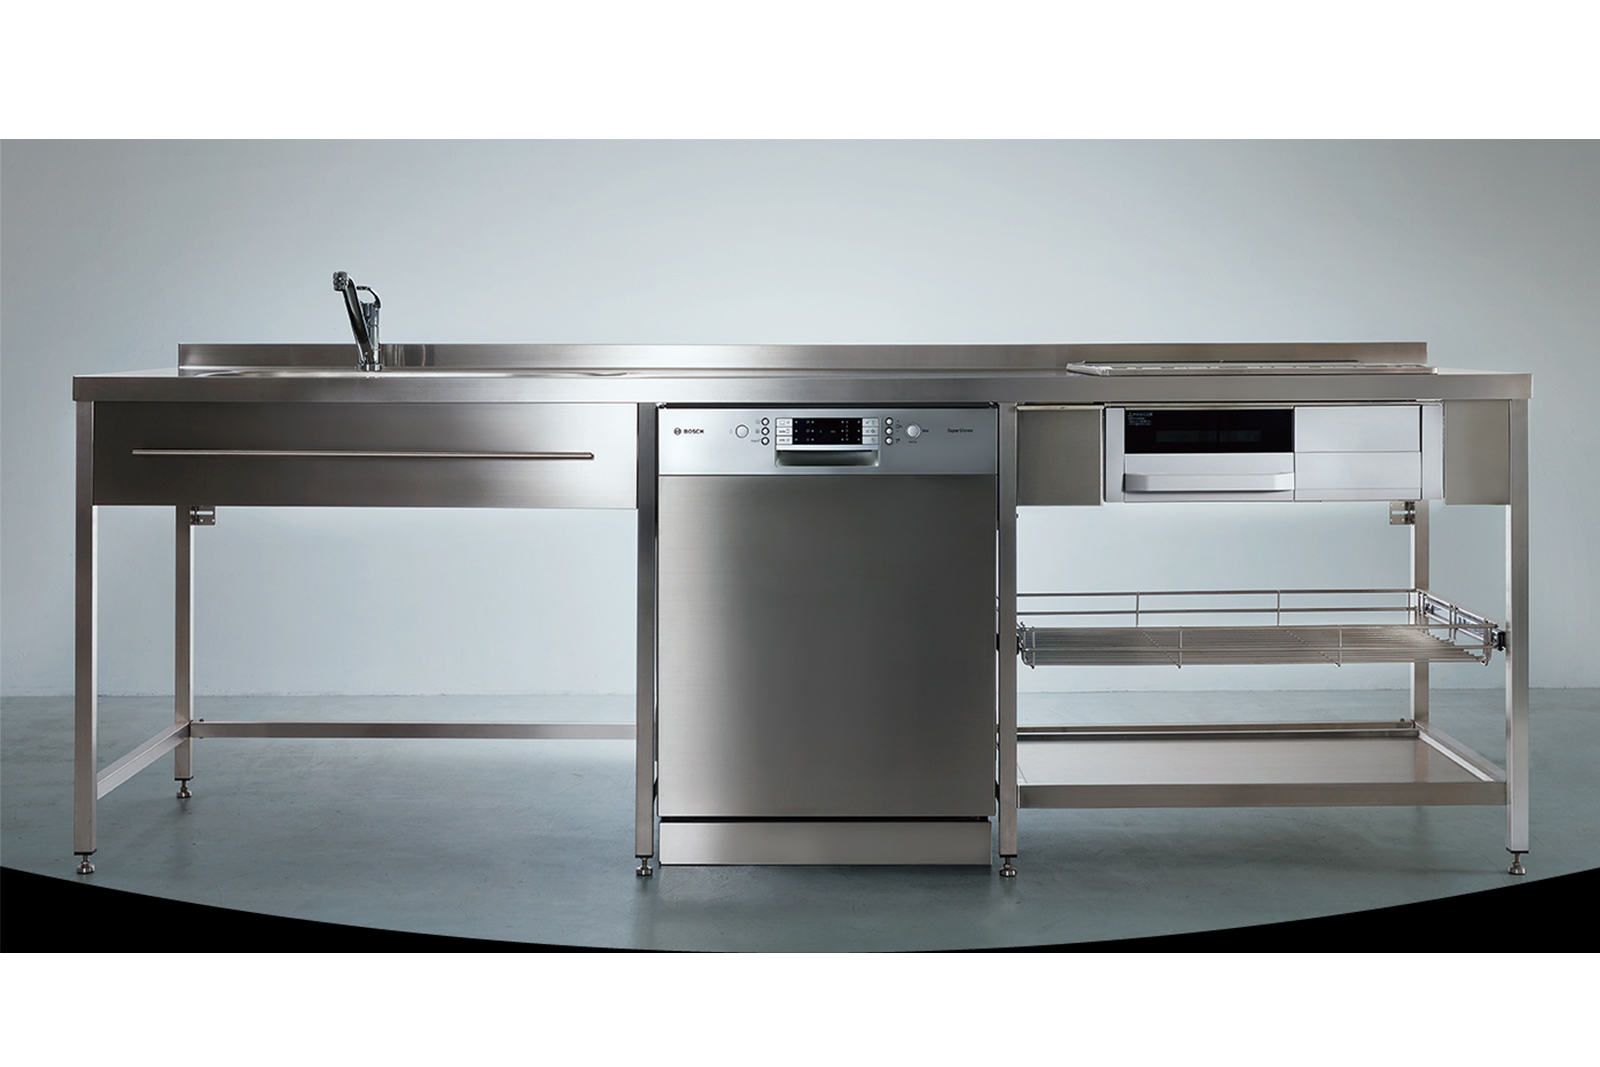 ステンレスフレームキッチン W2400×D650 KB-KC005-03-G078 中央はオプションのフロントオープン食洗機 W600（W2100・W2250・W2400はW450の食洗機のみ設置可能）※タオルバーは旧仕様のW800、現行はW490